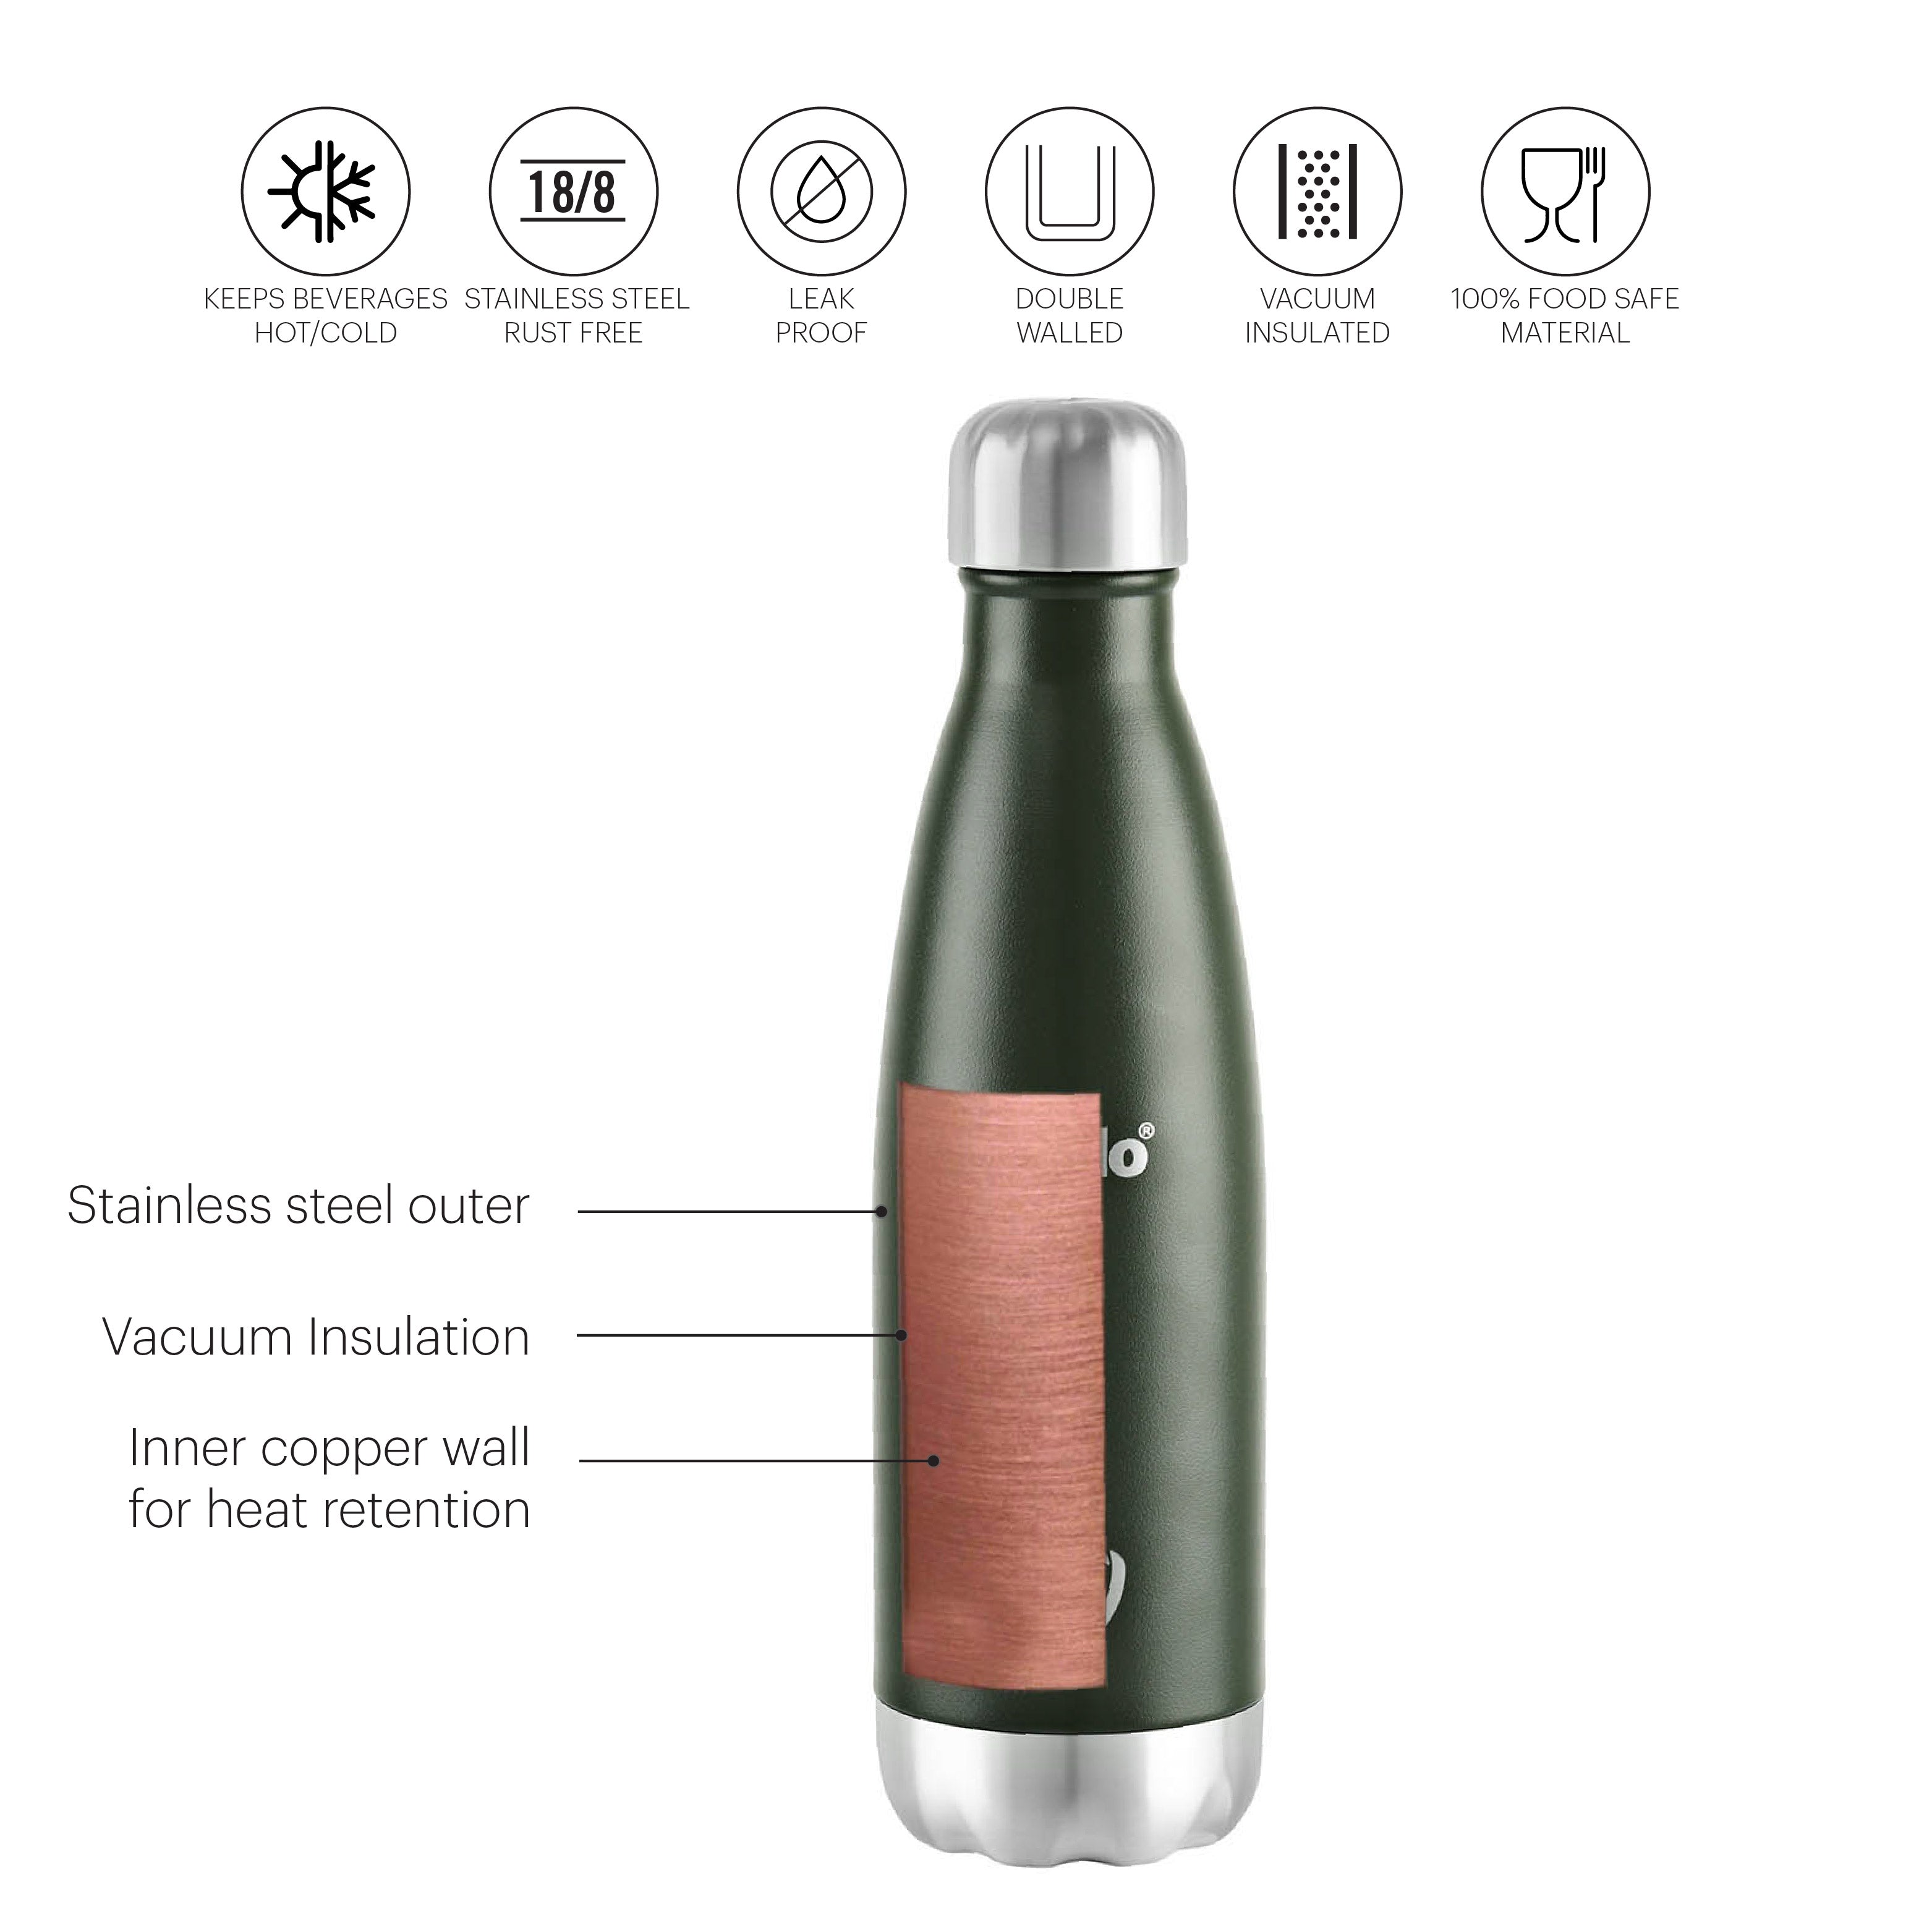 Duro Swift Flask, Vacusteel Water Bottle Green / 750ml